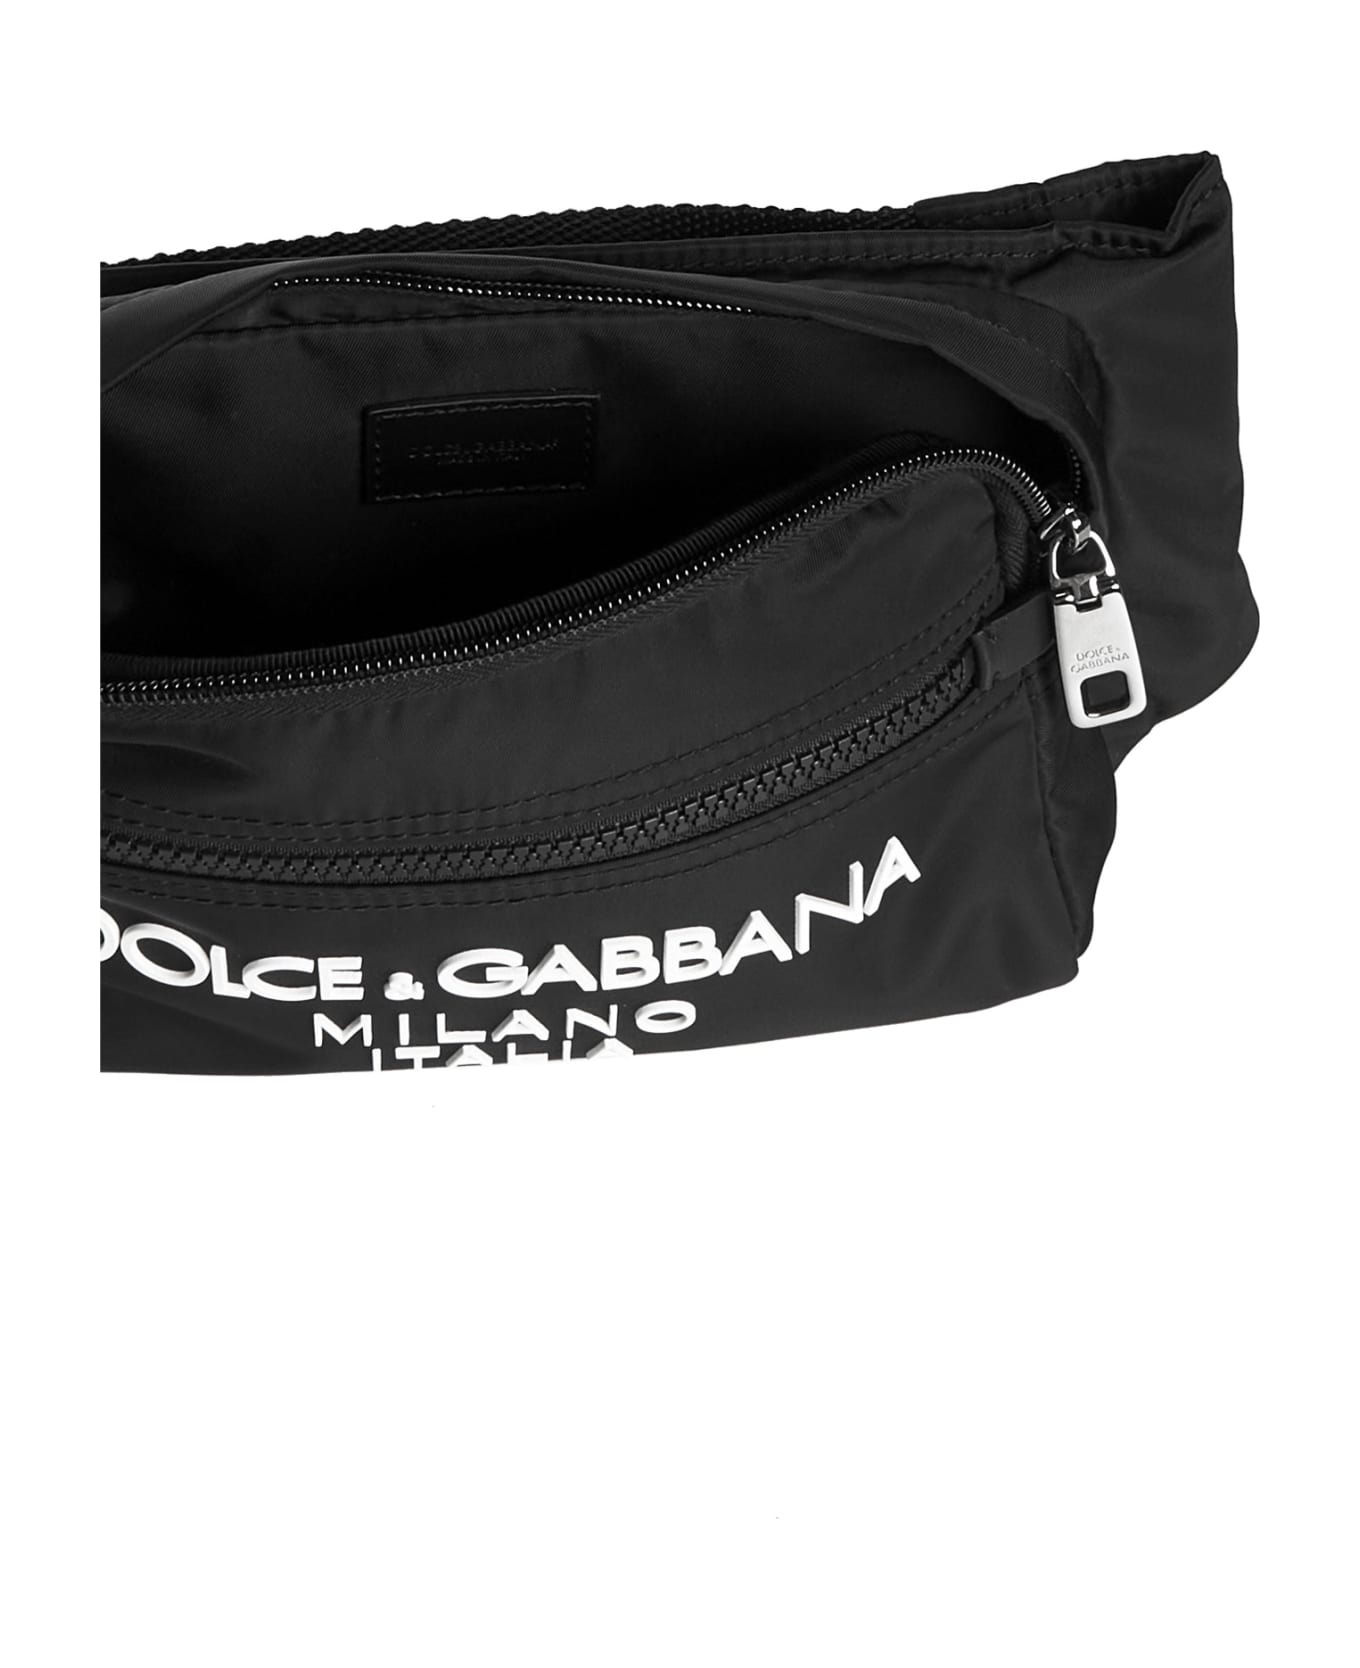 Dolce & Gabbana Nylon Beltpack Bag - Black